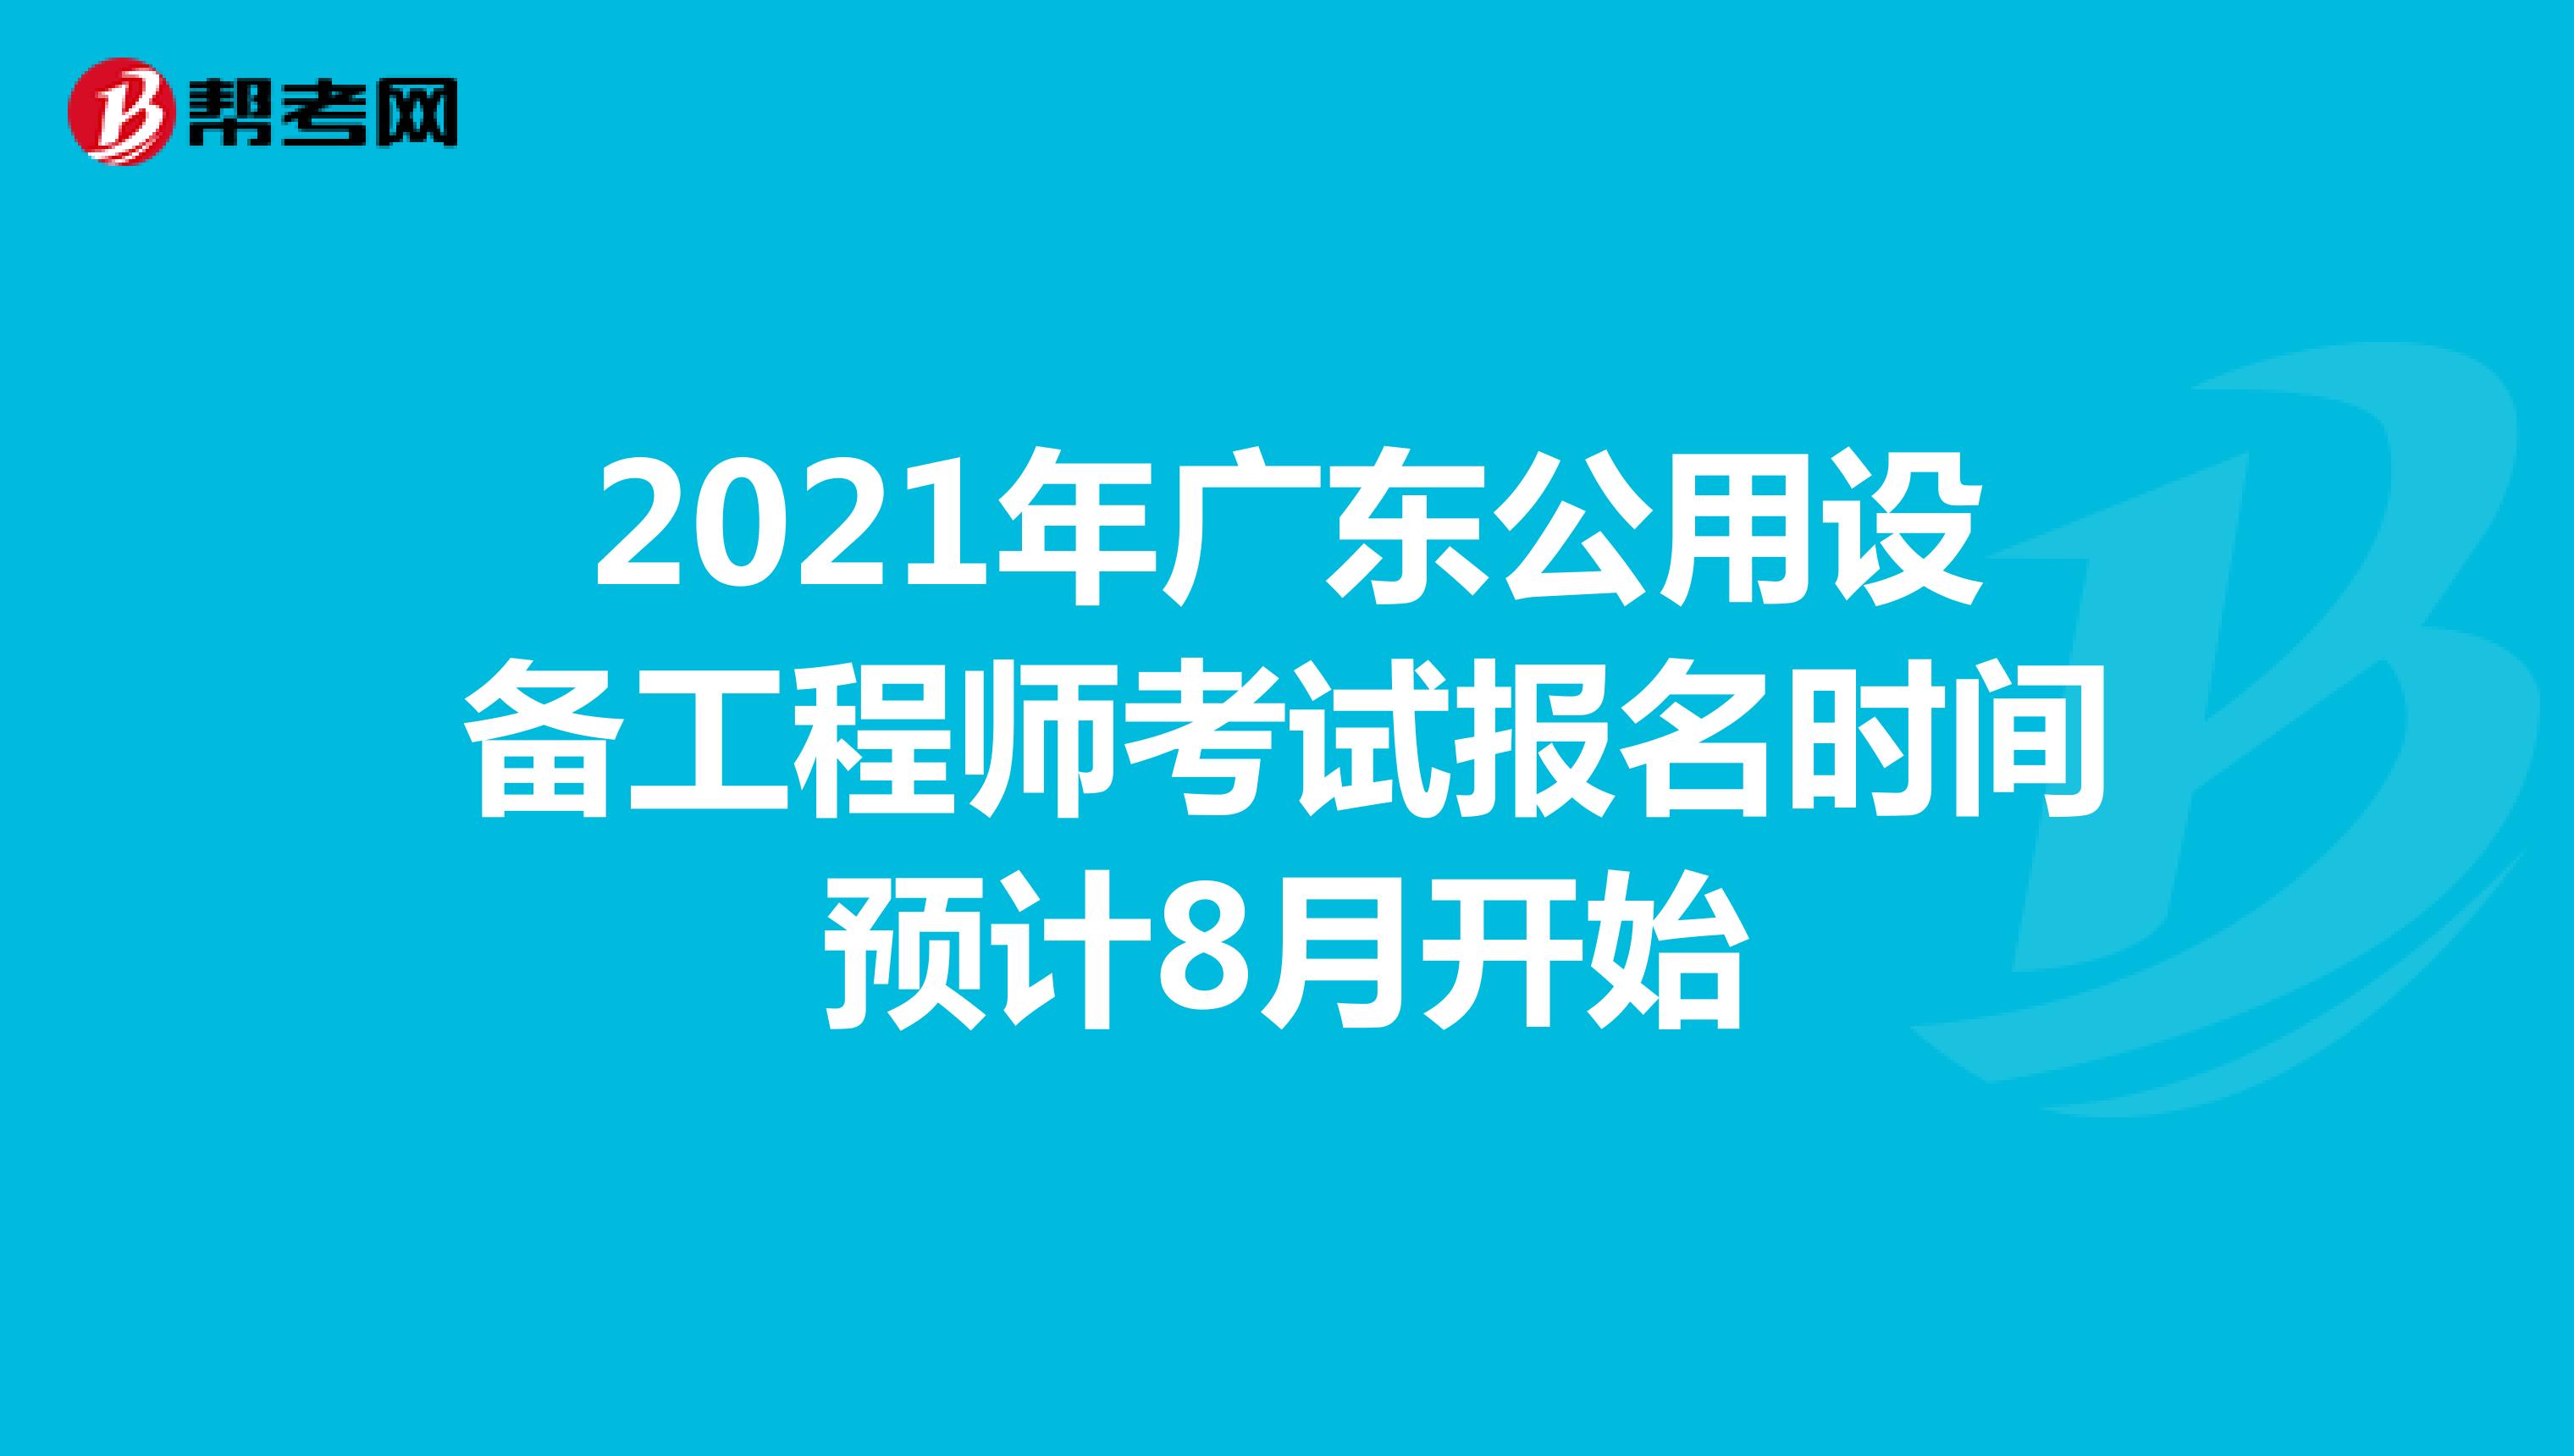 2021年广东公用设备工程师考试报名时间预计8月开始